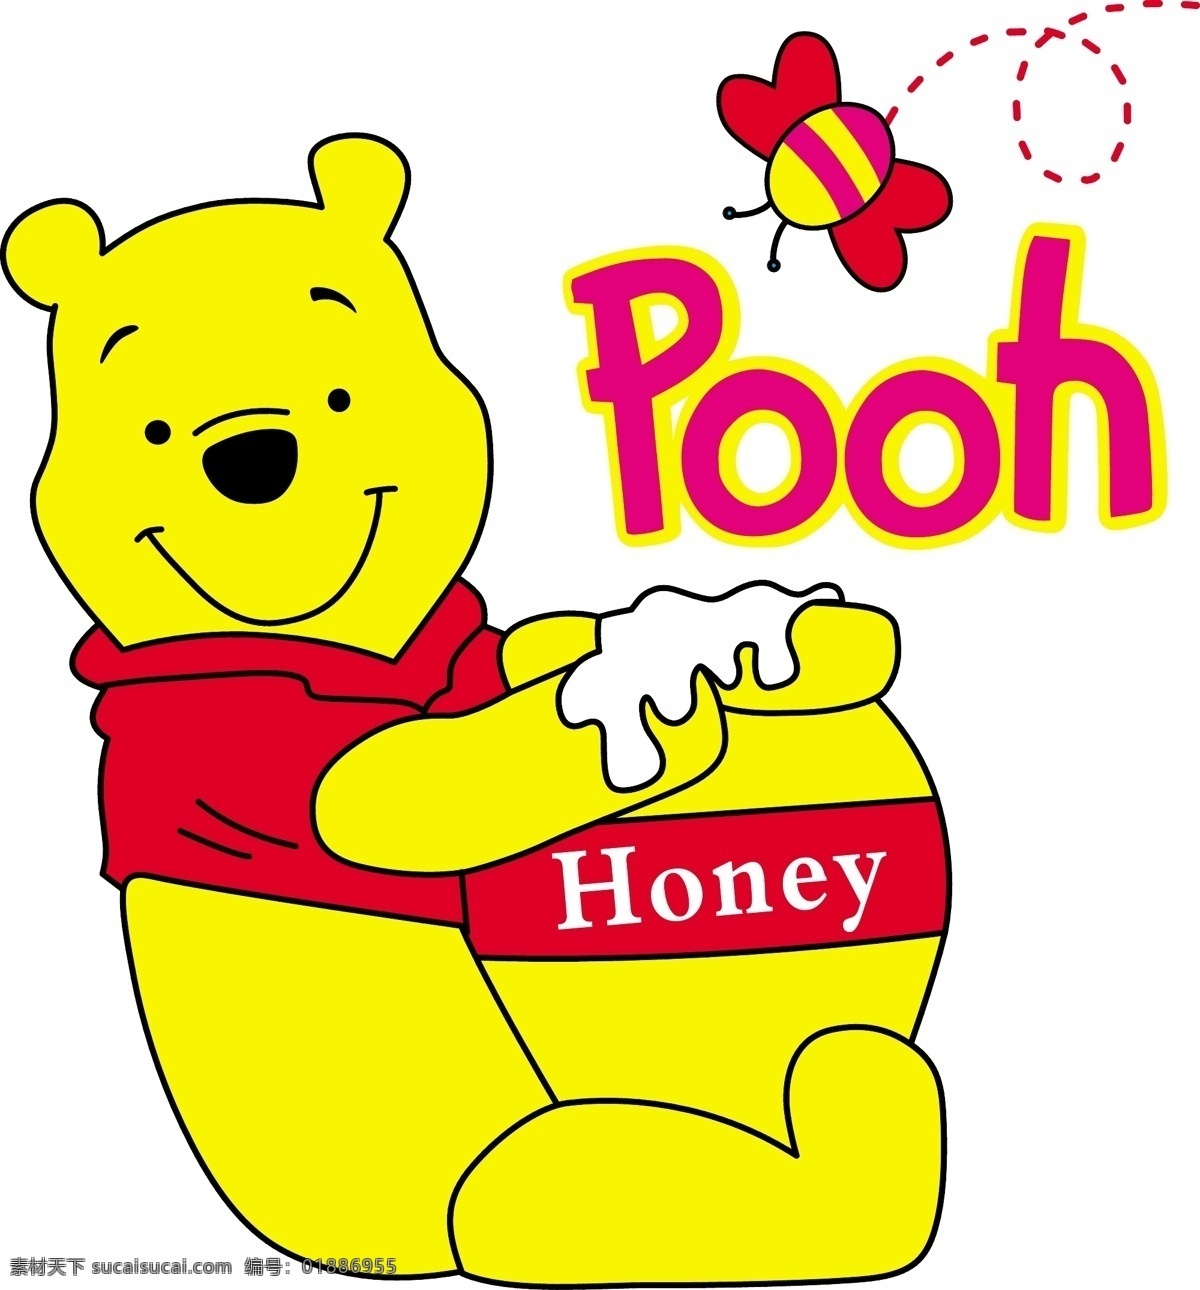 小熊 honey pooh 矢量图 明星偶像 矢量人物 矢量